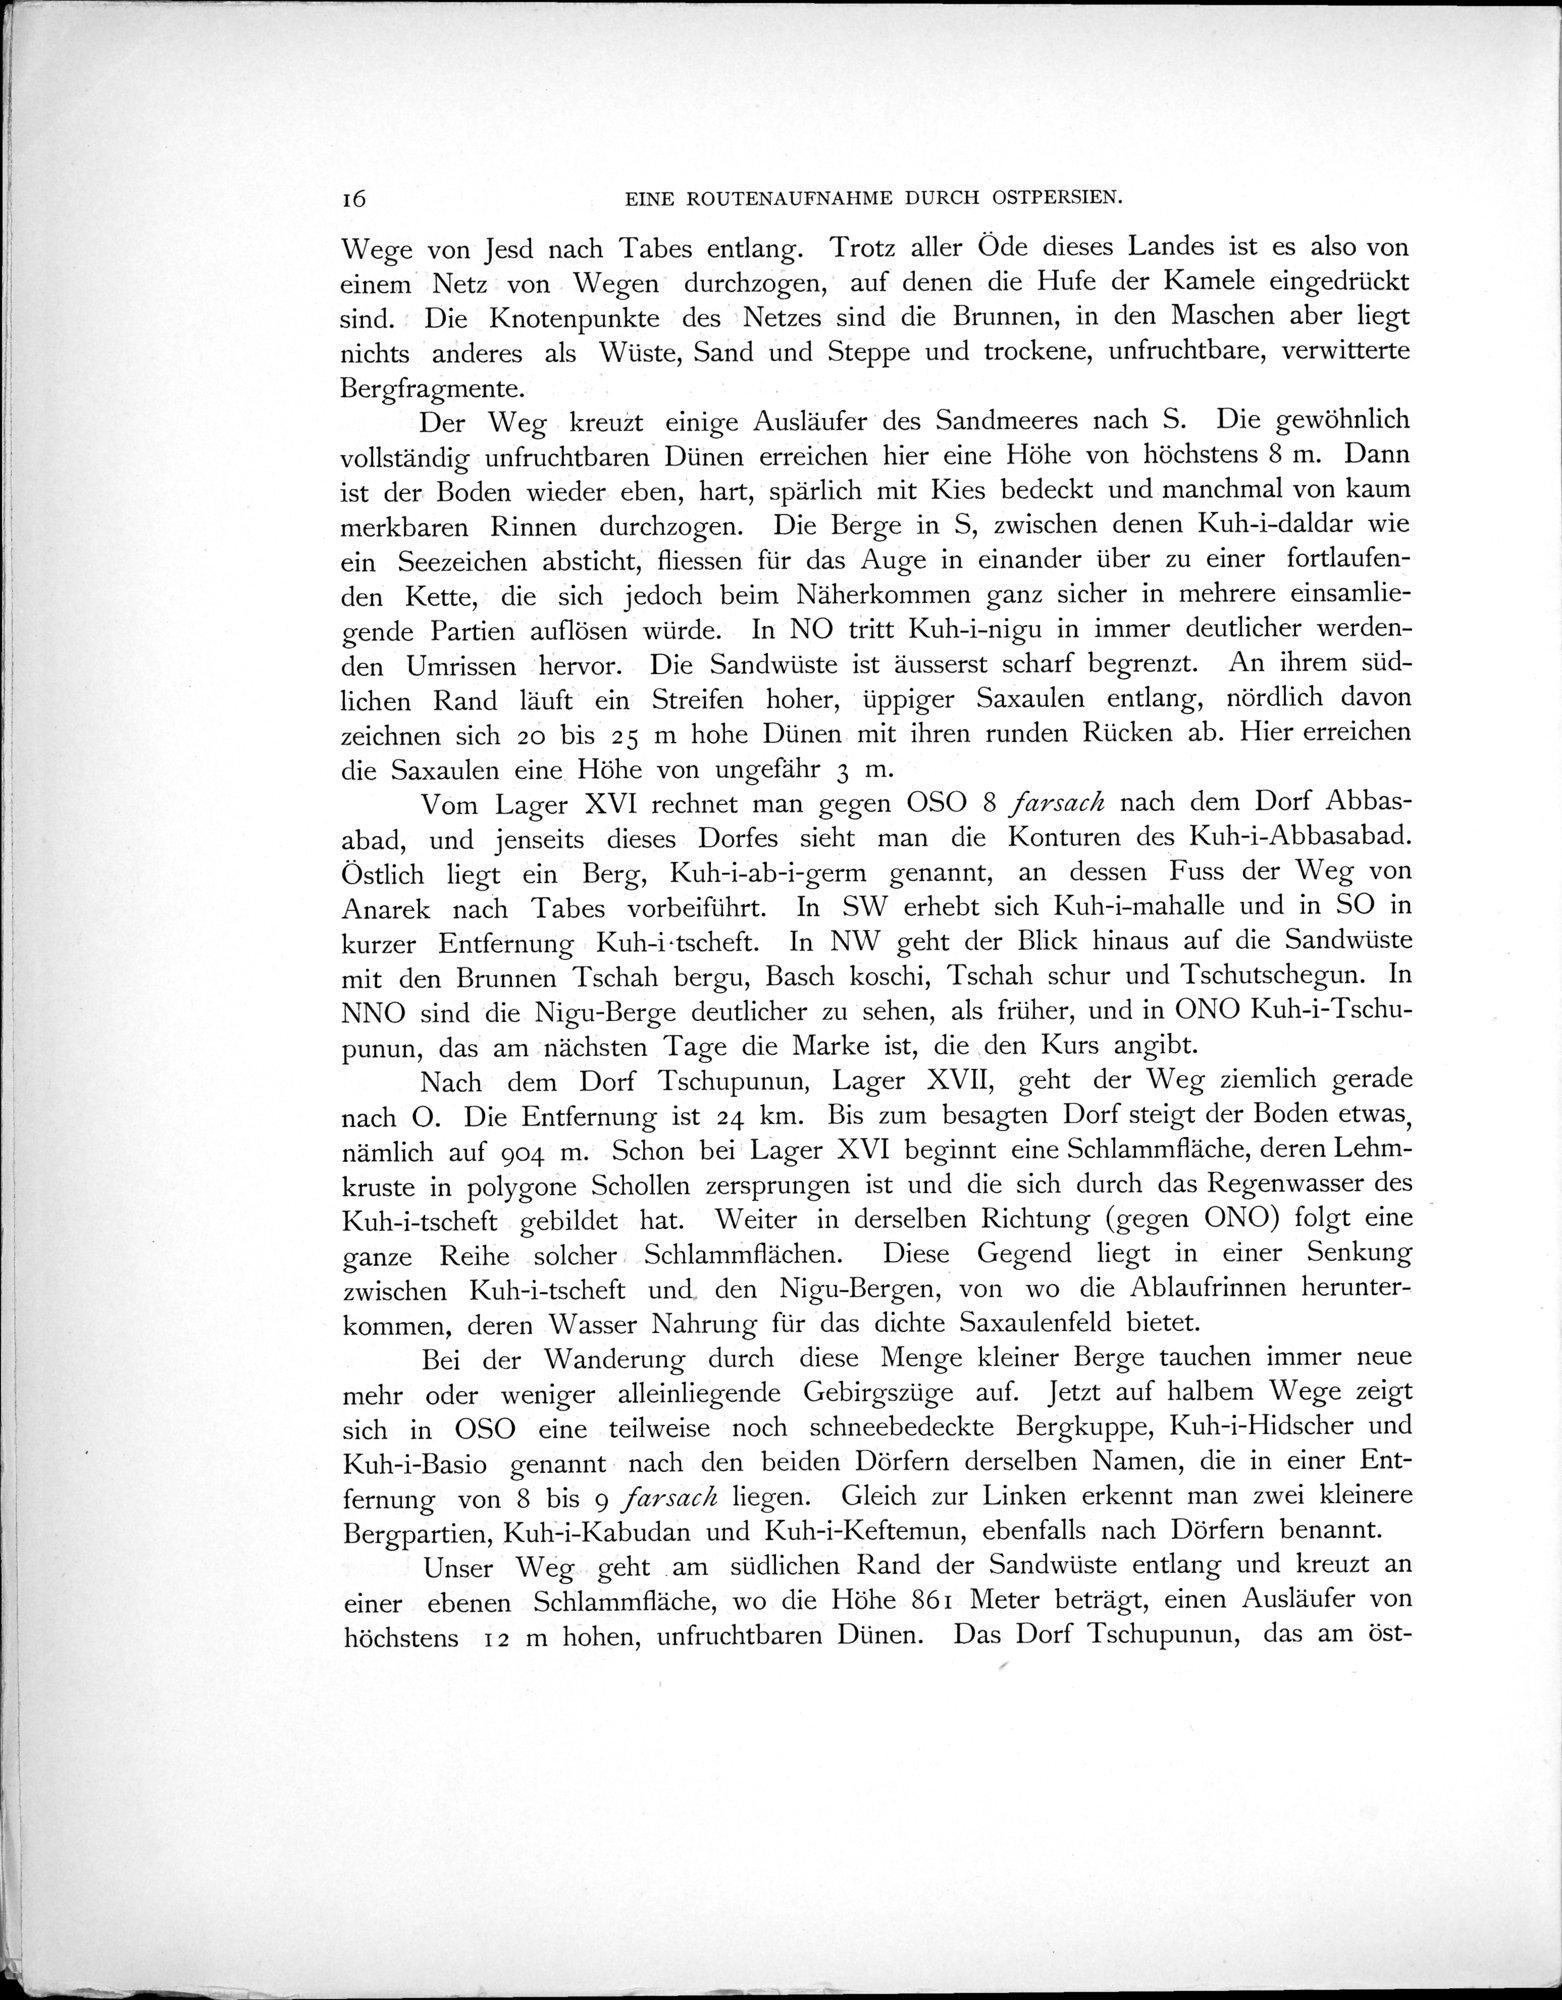 Eine Routenaufnahme durch Ostpersien : vol.1 / Page 60 (Grayscale High Resolution Image)